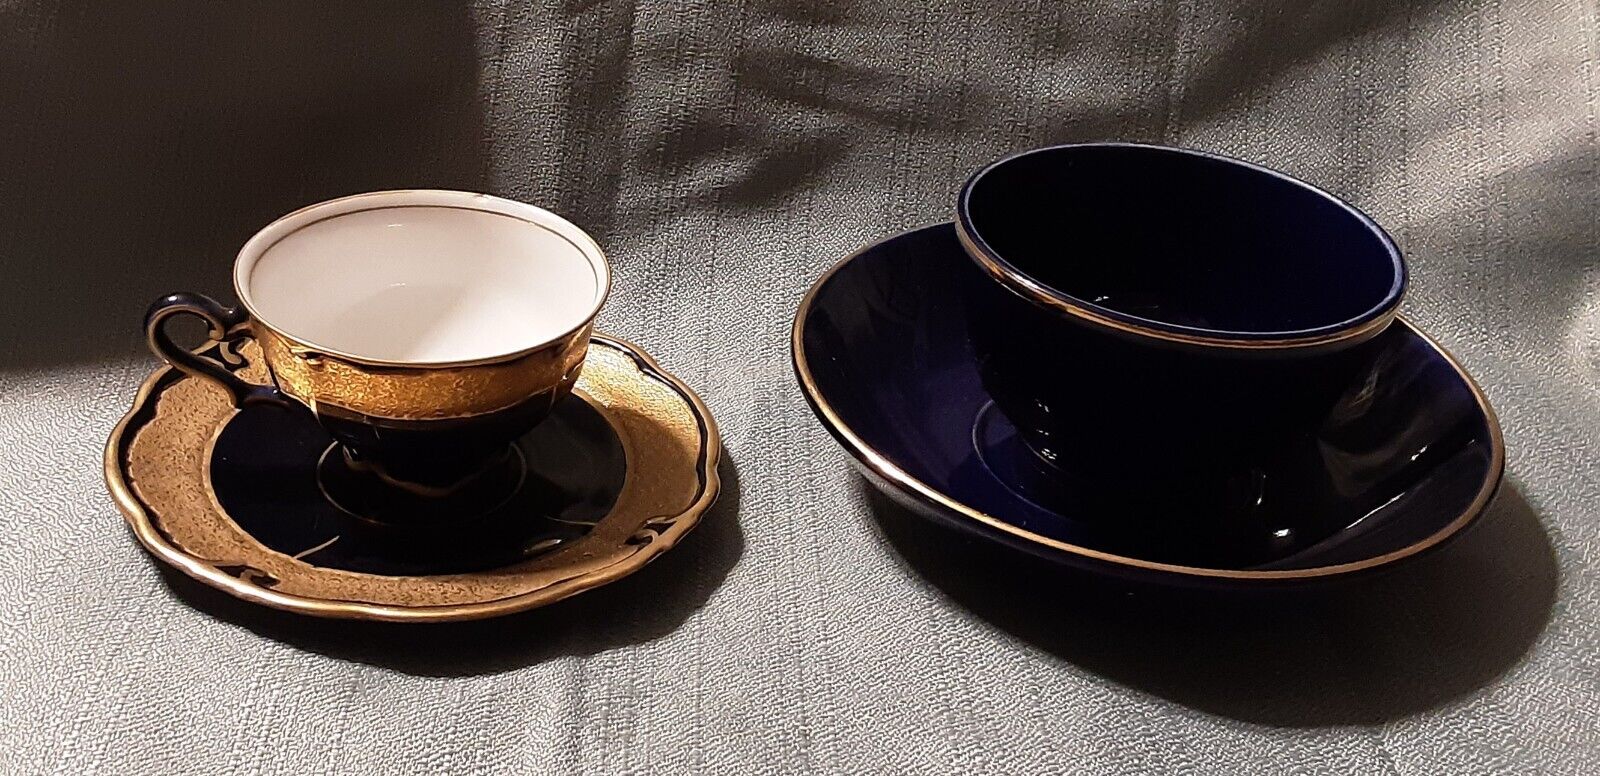 Pair of Vintage German Bone China Teacup & Saucers